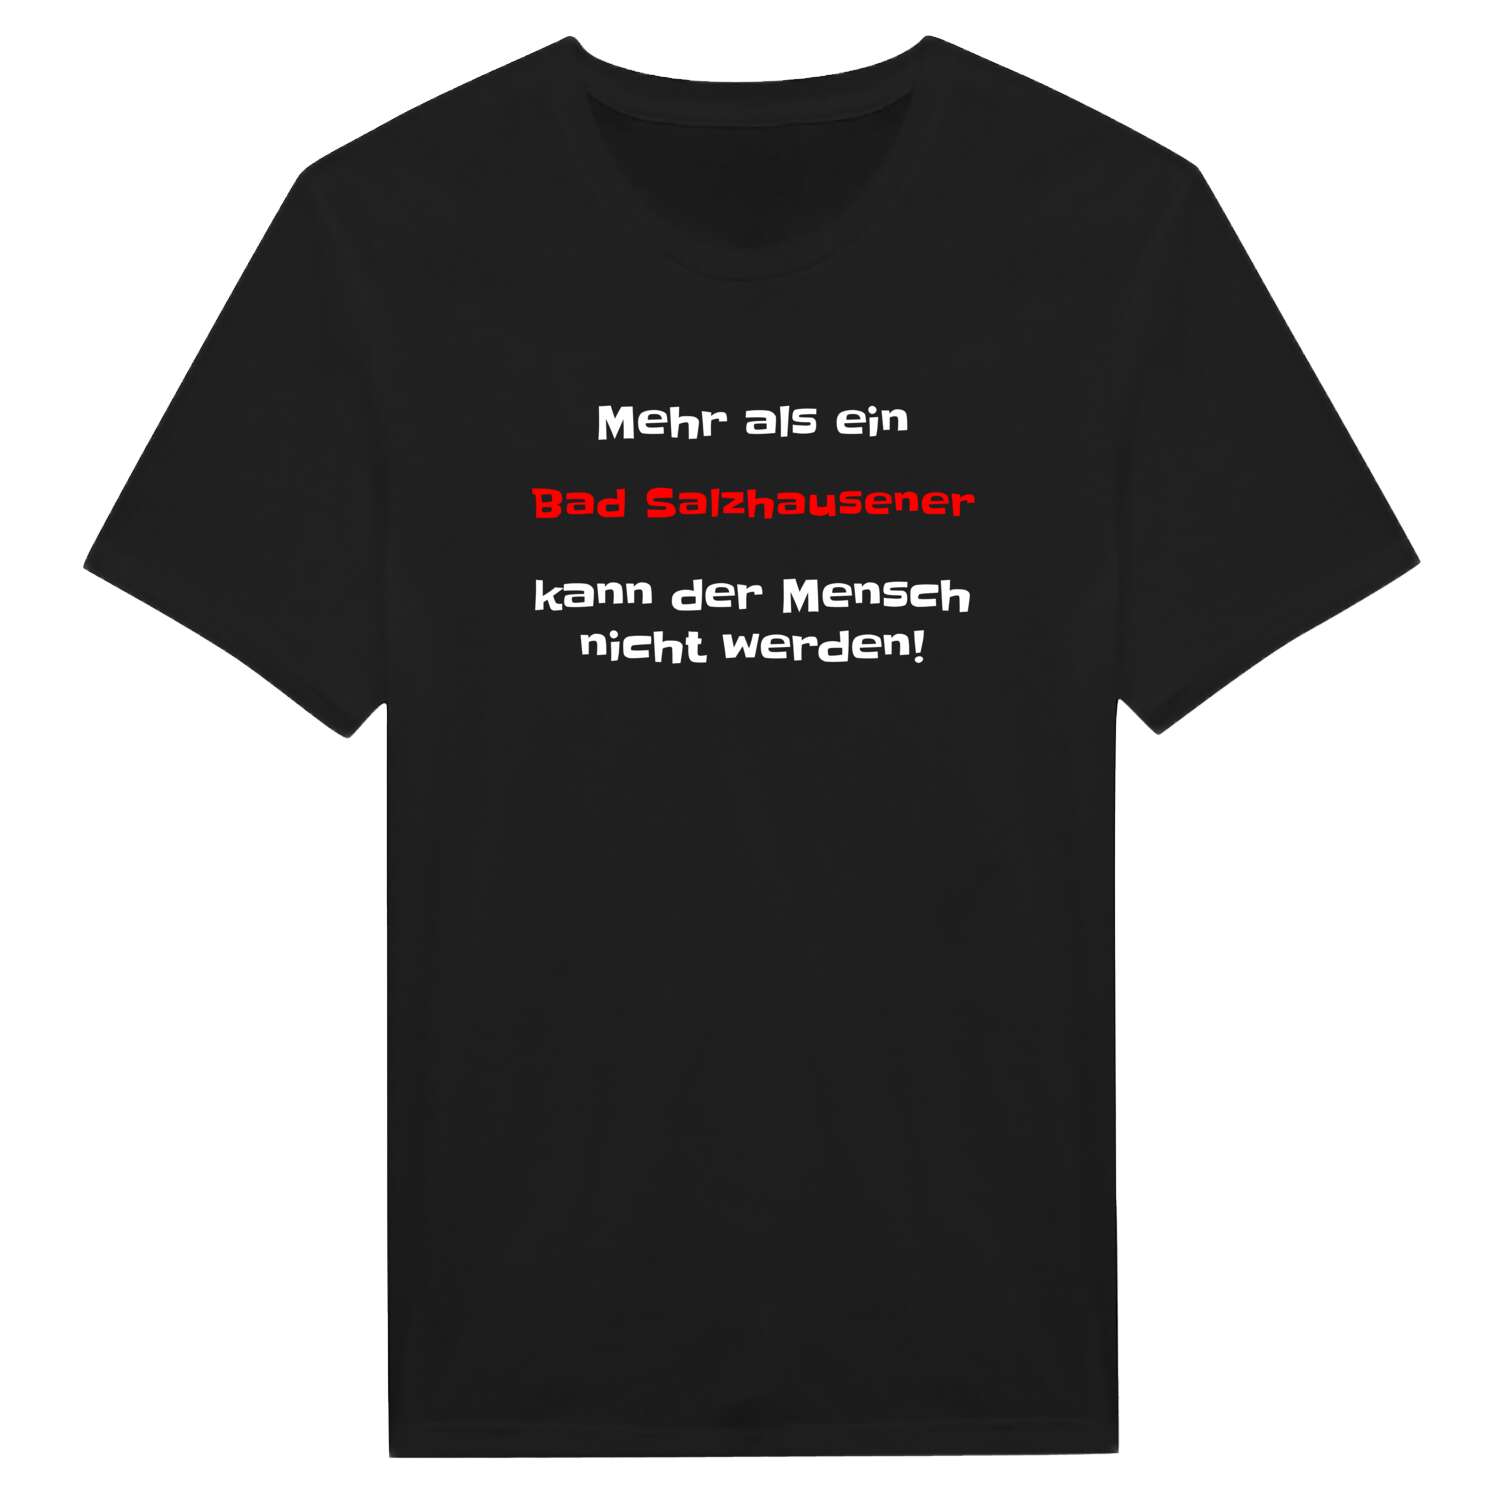 Bad Salzhausen T-Shirt »Mehr als ein«